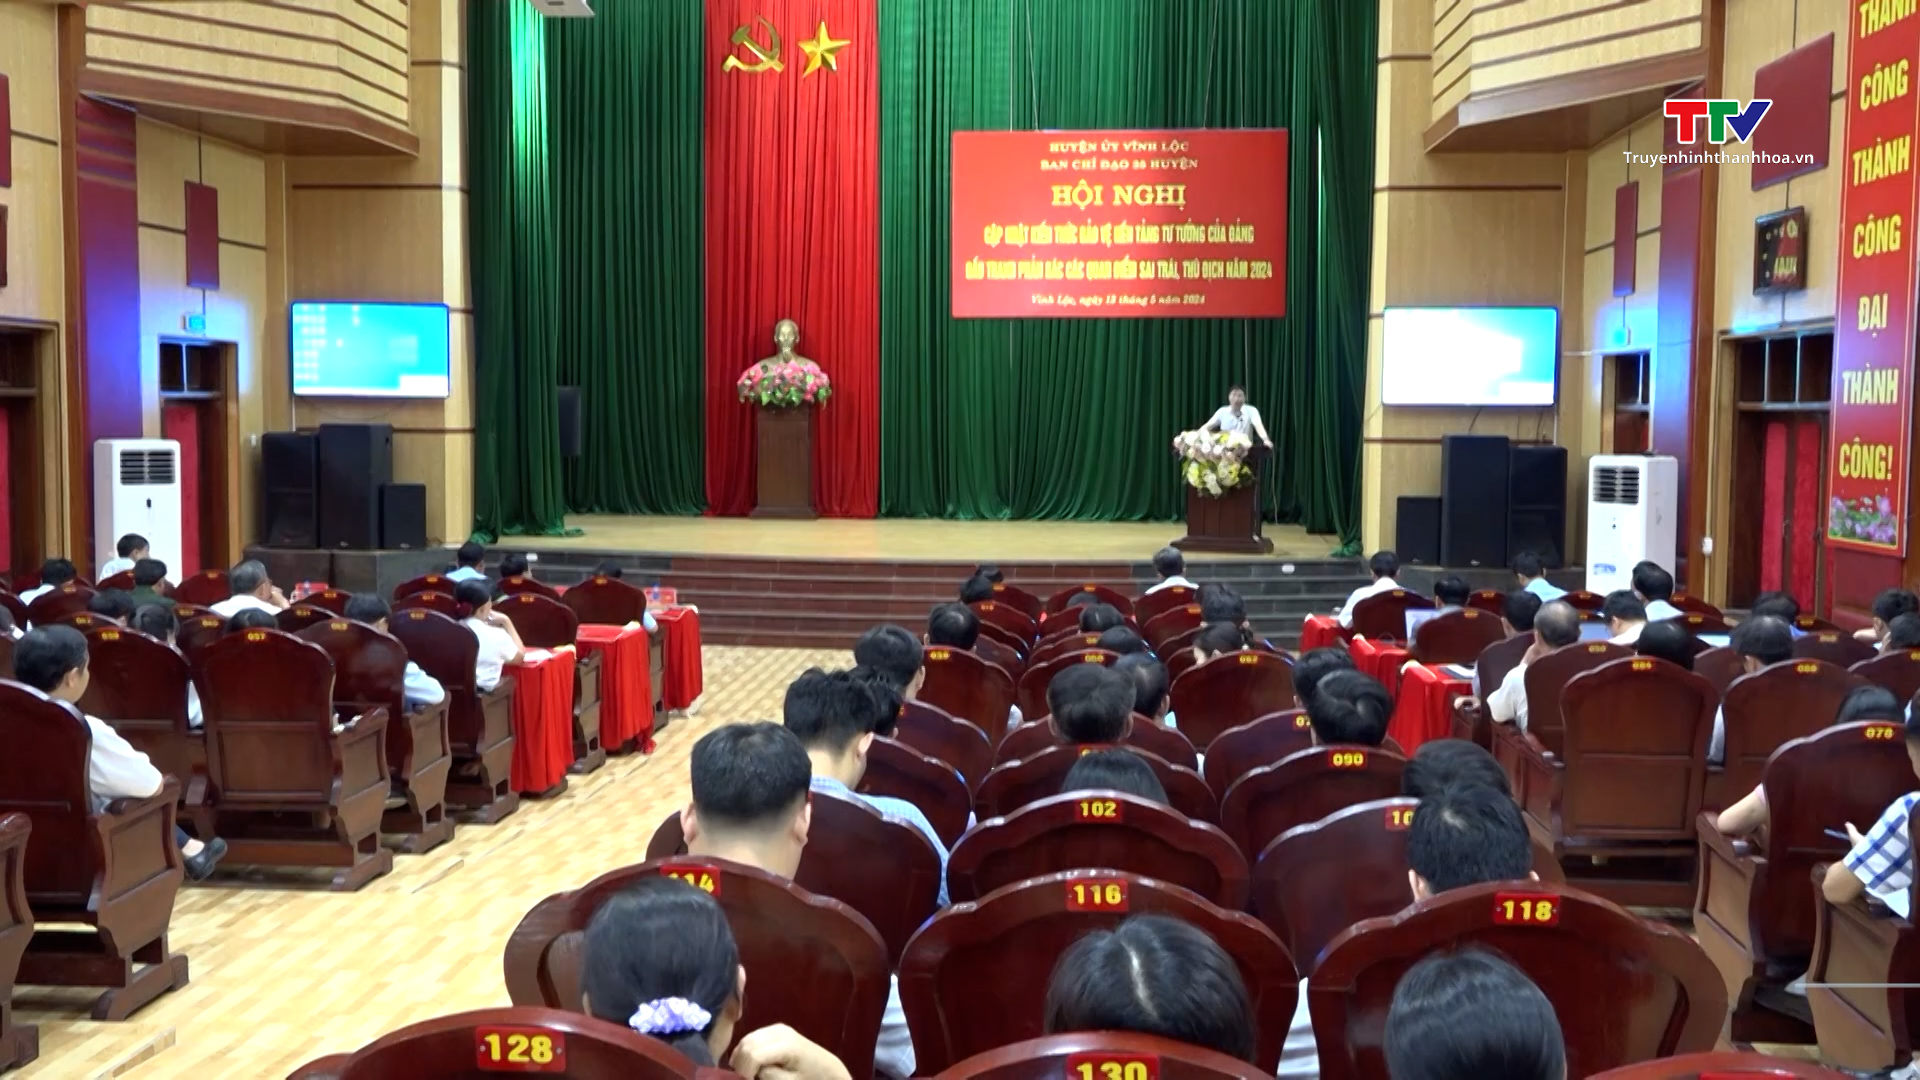 Huyện uỷ Vĩnh Lộc cập nhật kiến thức bảo vệ nền tảng tư tưởng của Đảng, đấu tranh phản bác các quan điểm sai trái thù địch- Ảnh 1.